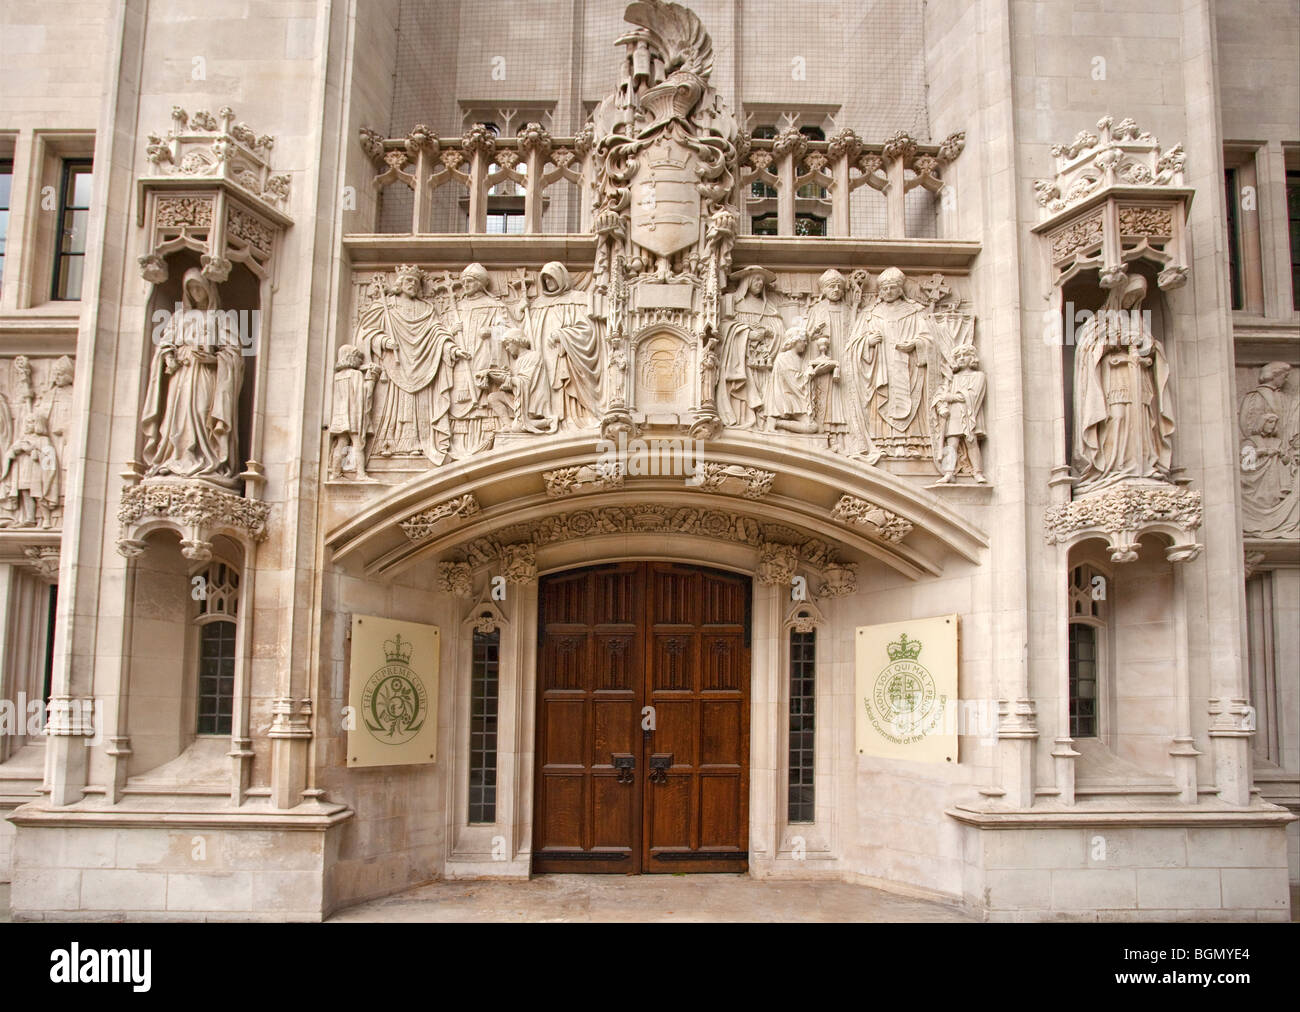 Oberste Gerichtshof Eingang Westminster London England UK United Kingdom GB Großbritannien britische Inseln Stockfoto